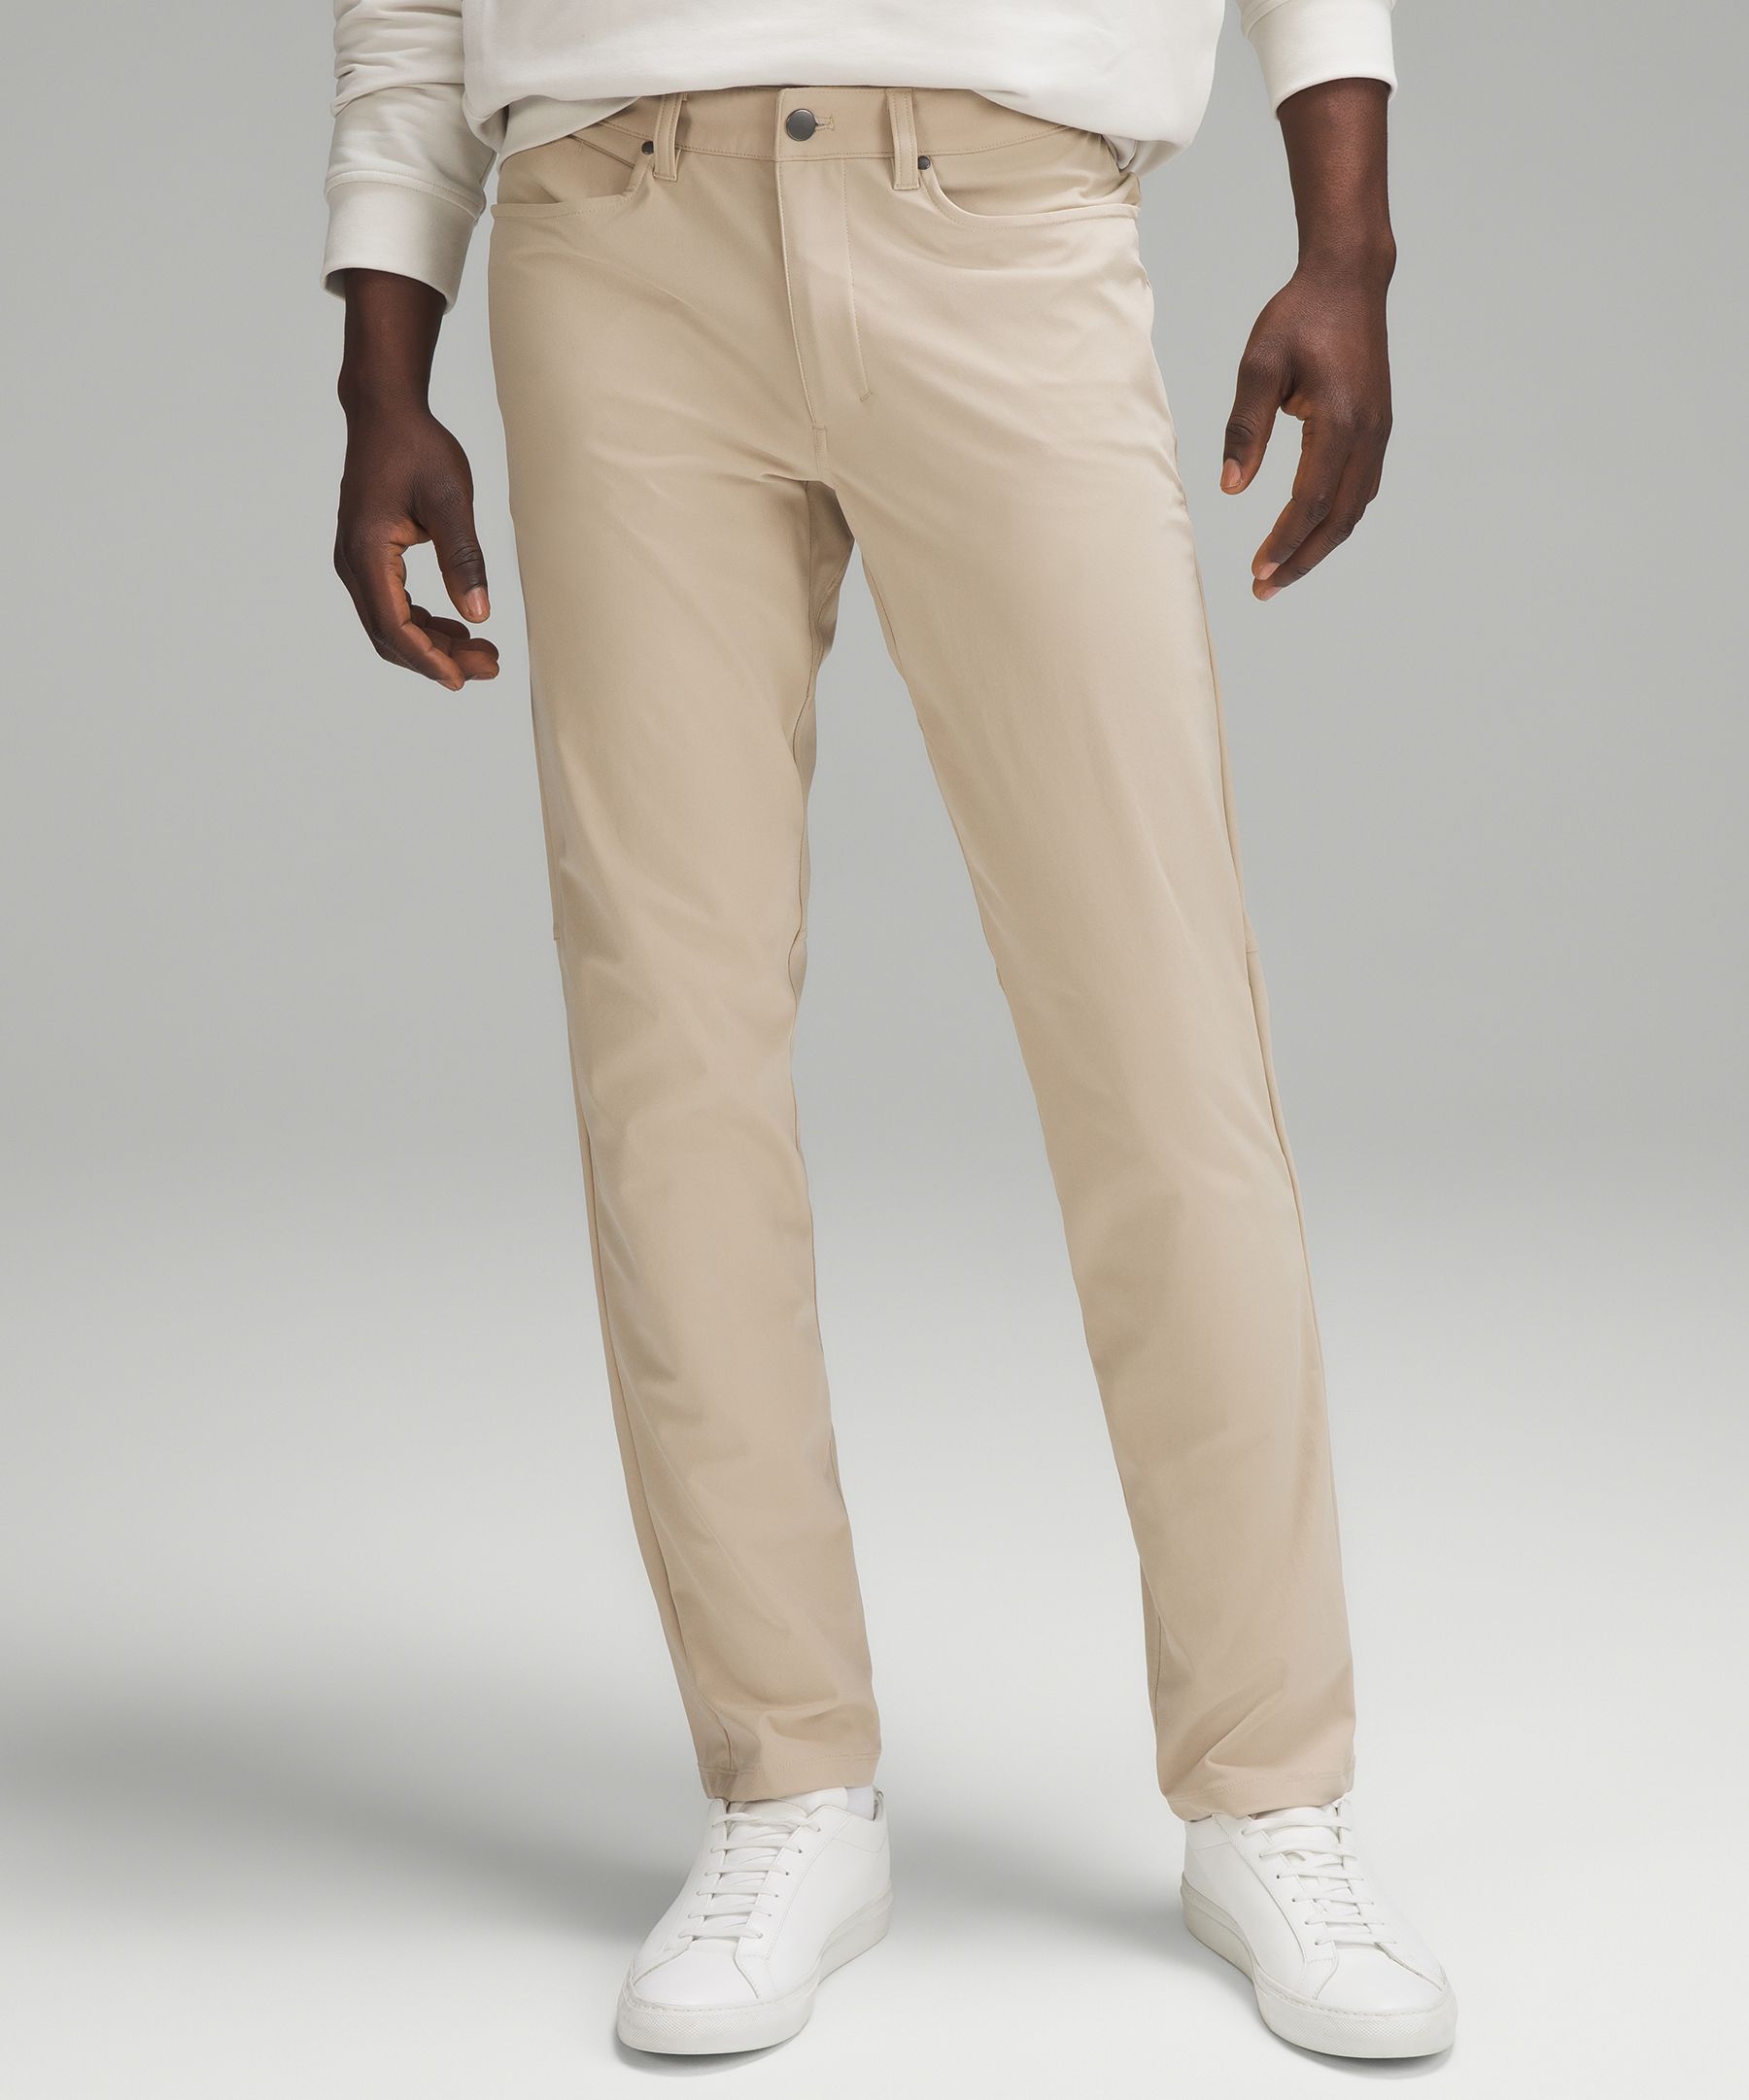 Lululemon athletica ABC Classic-Fit 5 Pocket Pant 34 *Warpstreme, Men's  Trousers